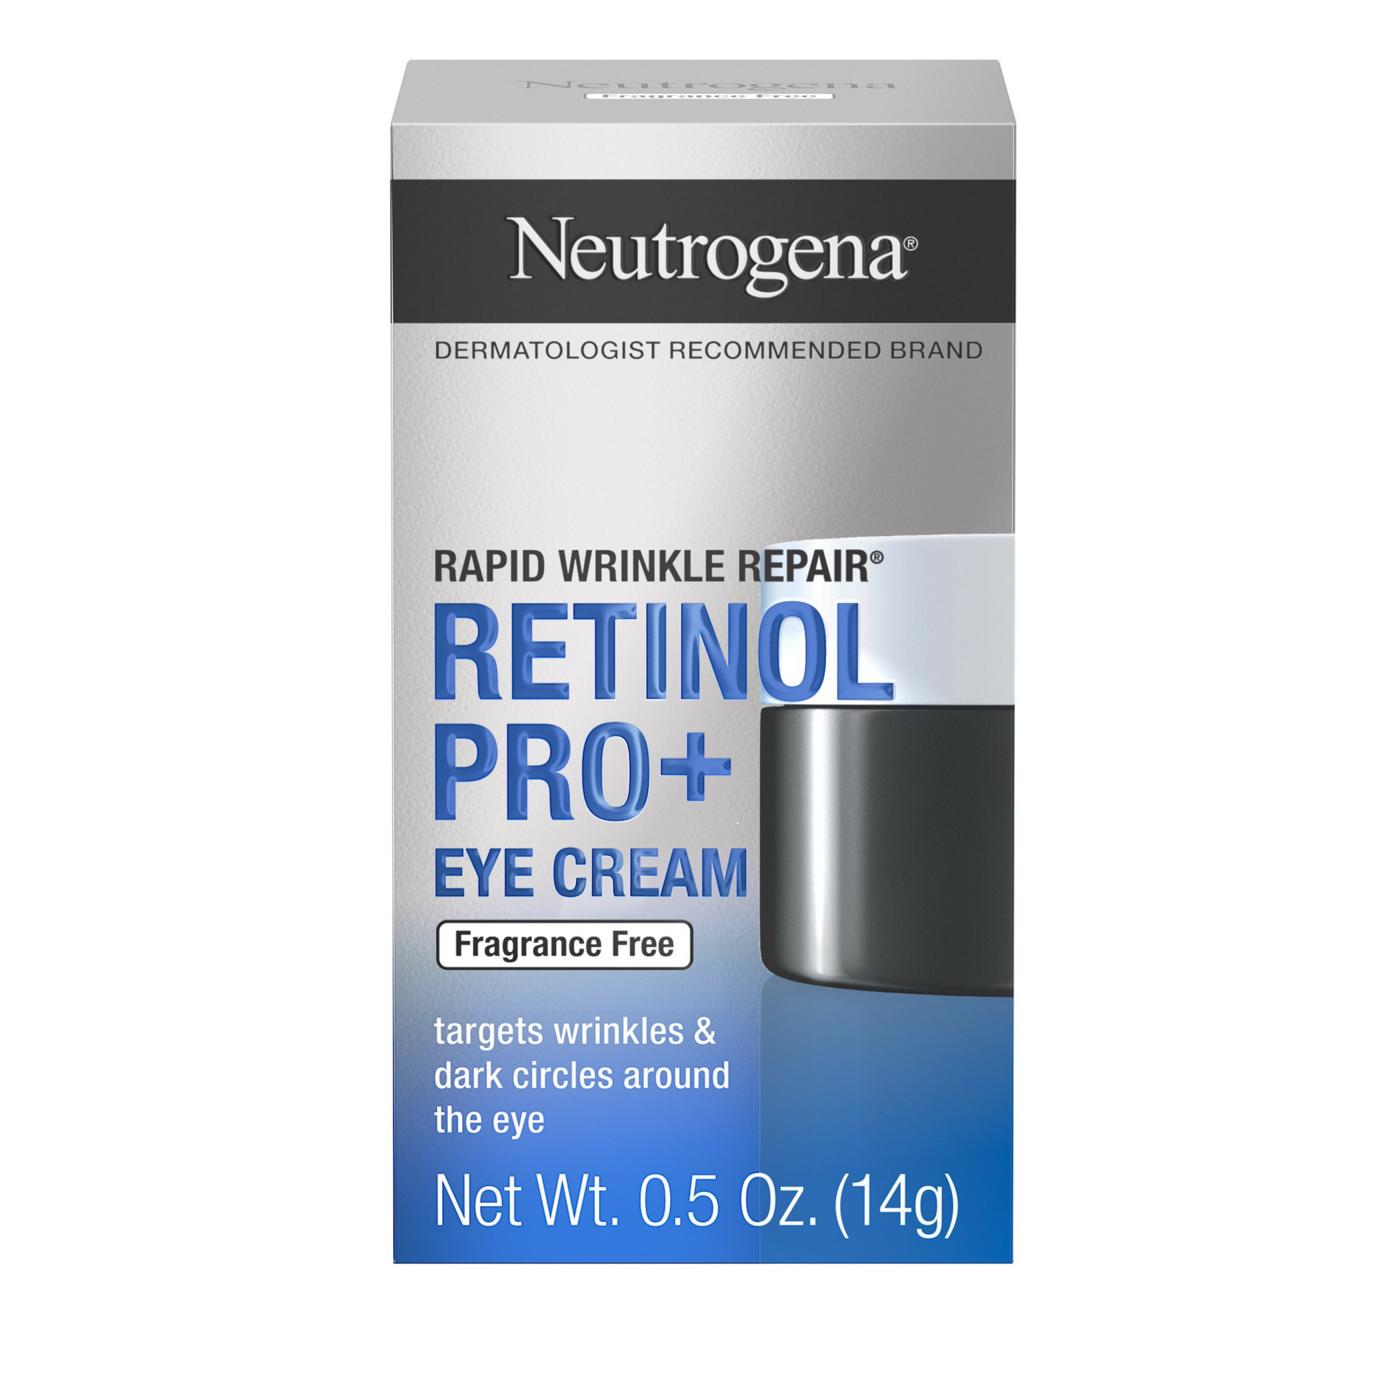 Neutrogena Rapid Wrinkle Repair Retinol Pro + Eye Cream; image 1 of 3